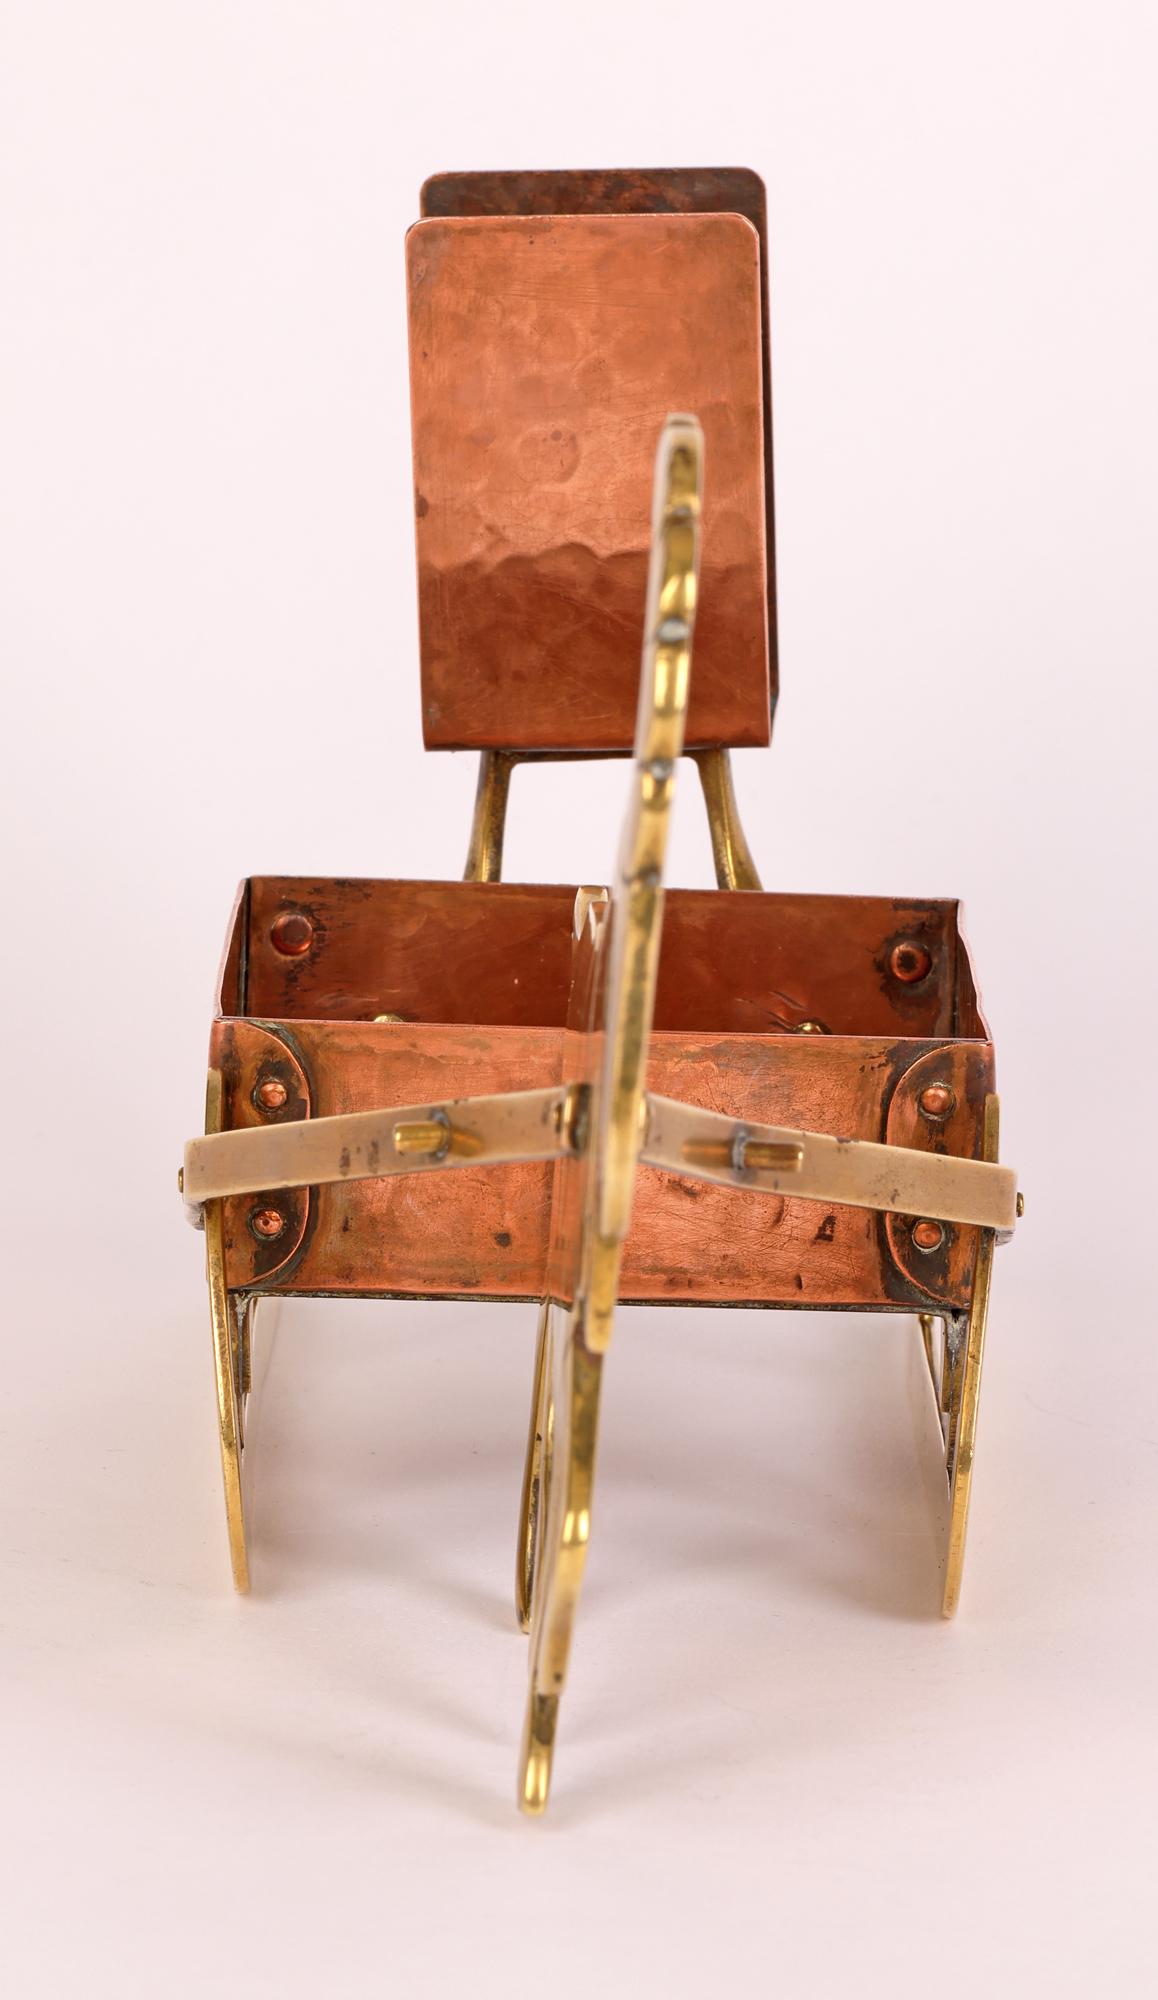 WMF Ignatius Taschner Jugendstil Copper and Brass Goat & Sleigh Candleholder 3